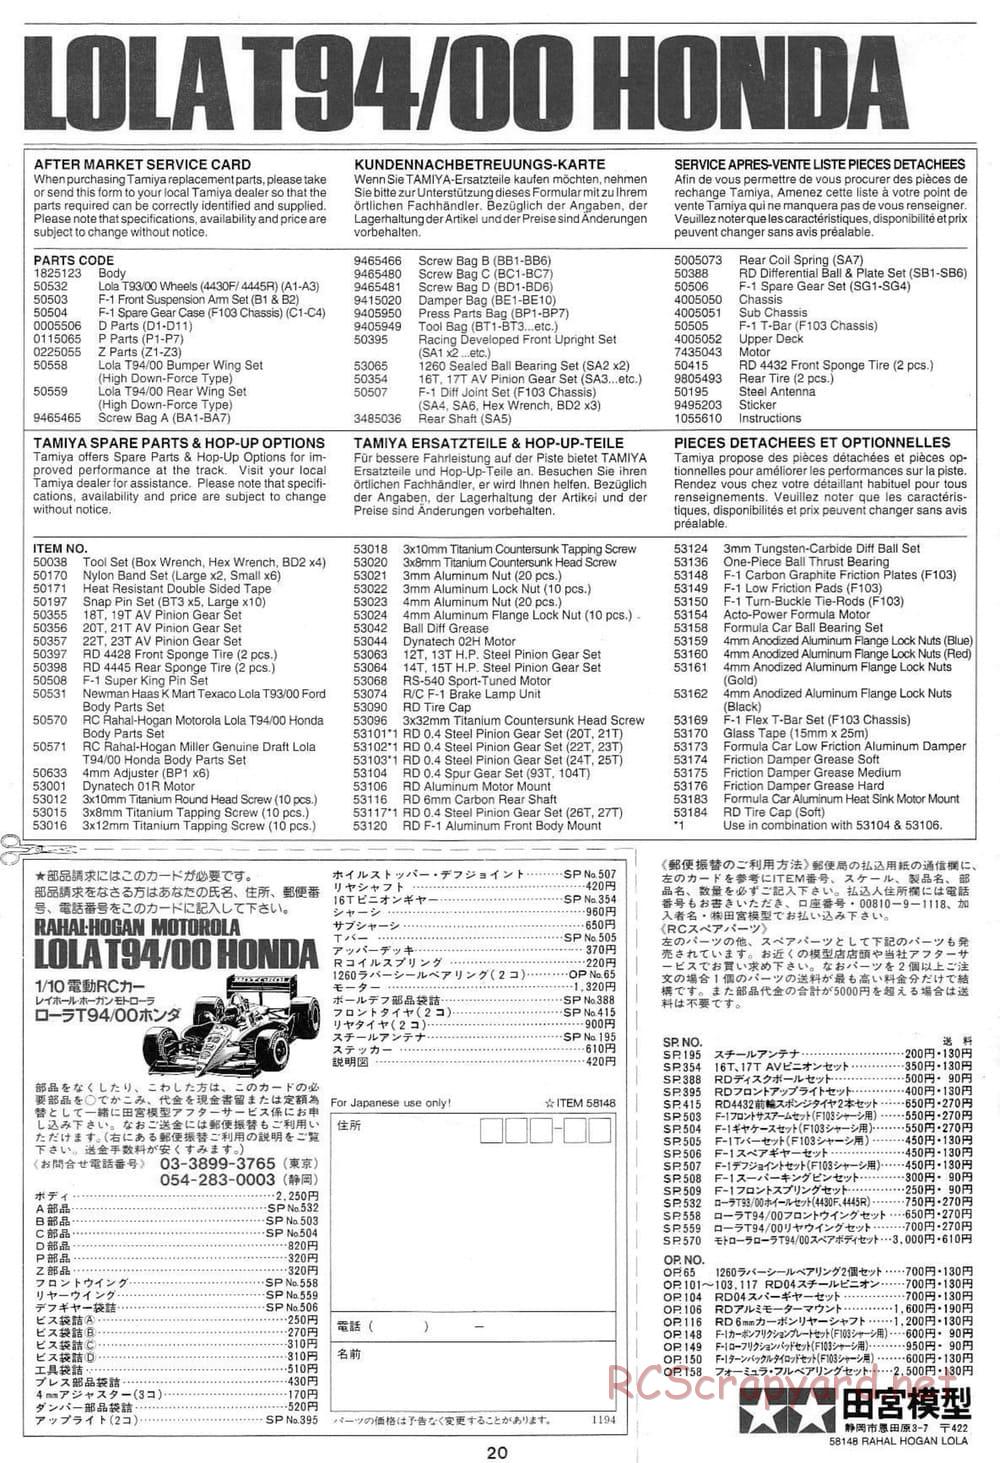 Tamiya - Rahal-Hogan Motorola Lola T94/00 Honda - F103L Chassis - Manual - Page 20